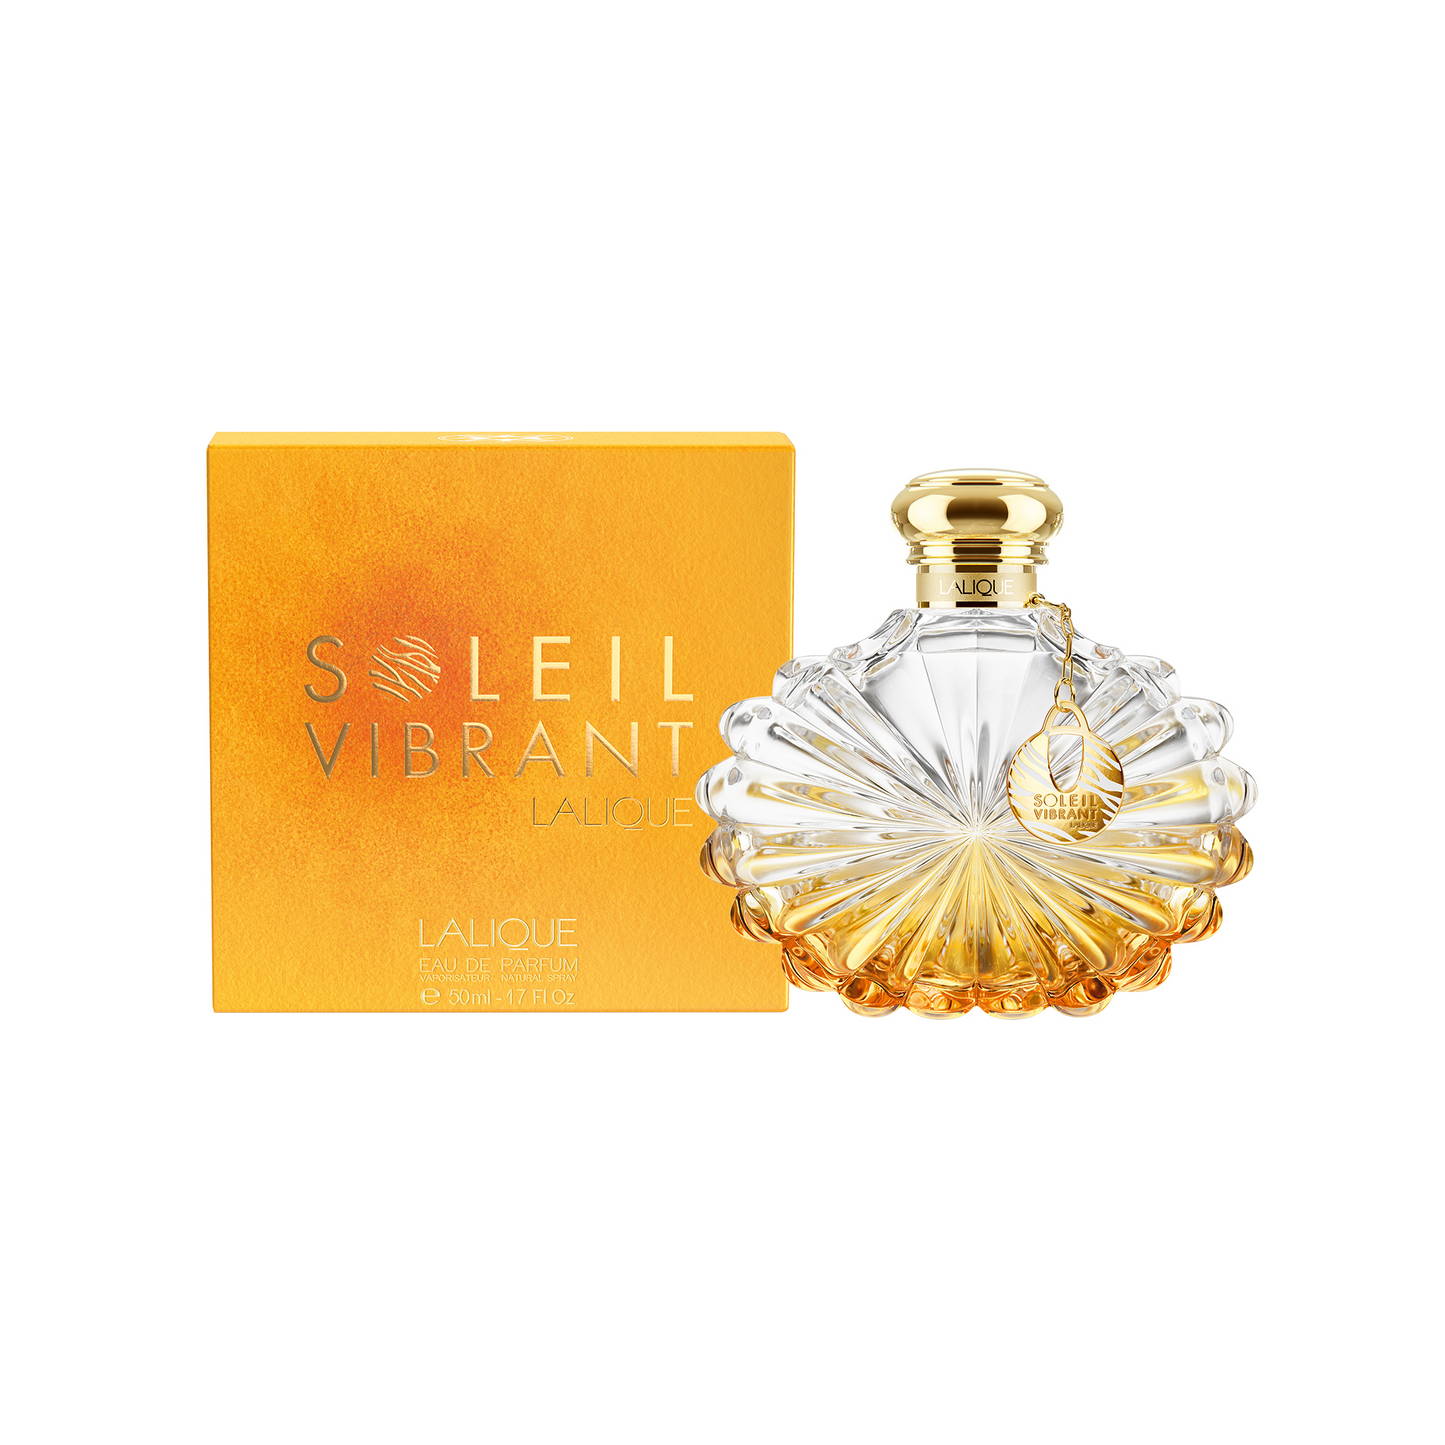 Soleil Lalique Vibrant Eau de Parfum